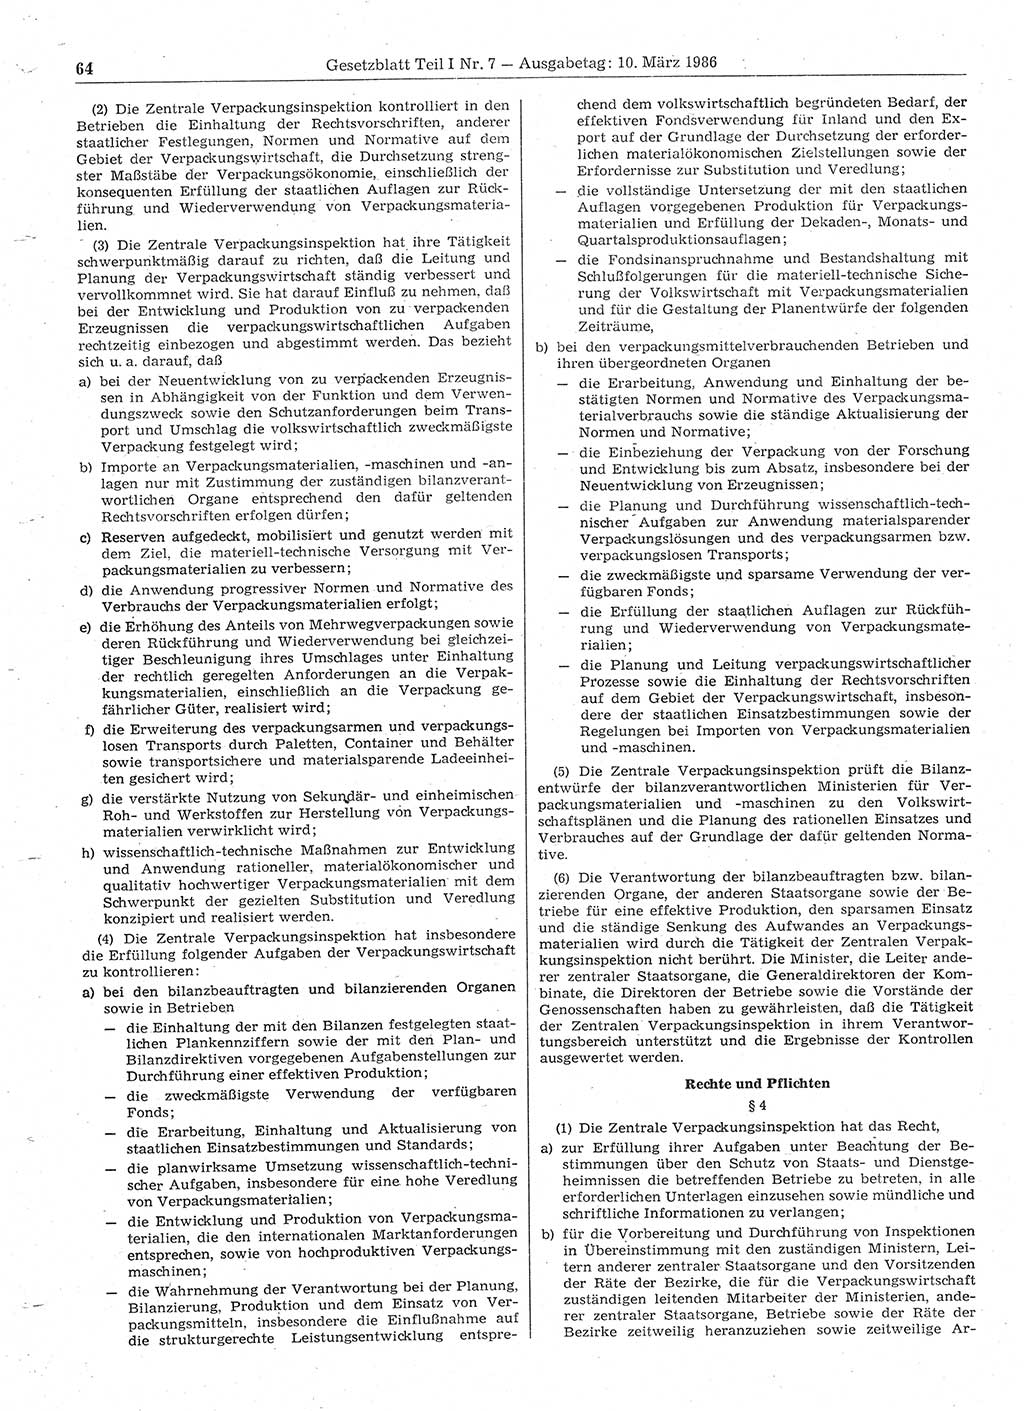 Gesetzblatt (GBl.) der Deutschen Demokratischen Republik (DDR) Teil Ⅰ 1986, Seite 64 (GBl. DDR Ⅰ 1986, S. 64)